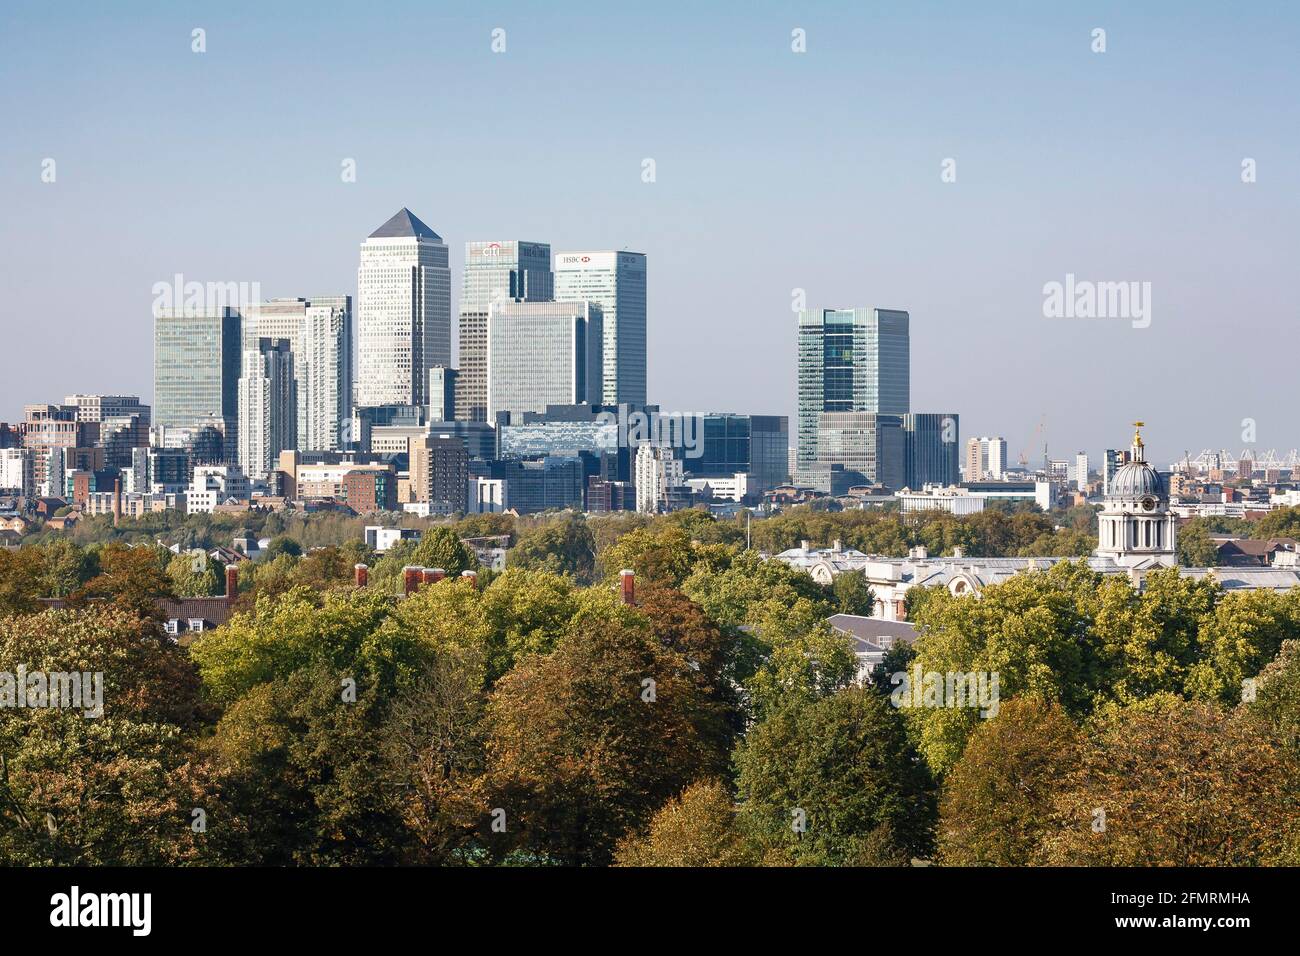 LONDRES, Royaume-Uni - 03 octobre 2011. Espaces verts. Centre de Londres, horizon de la ville britannique avec arbres et Canary Wharf Banque D'Images